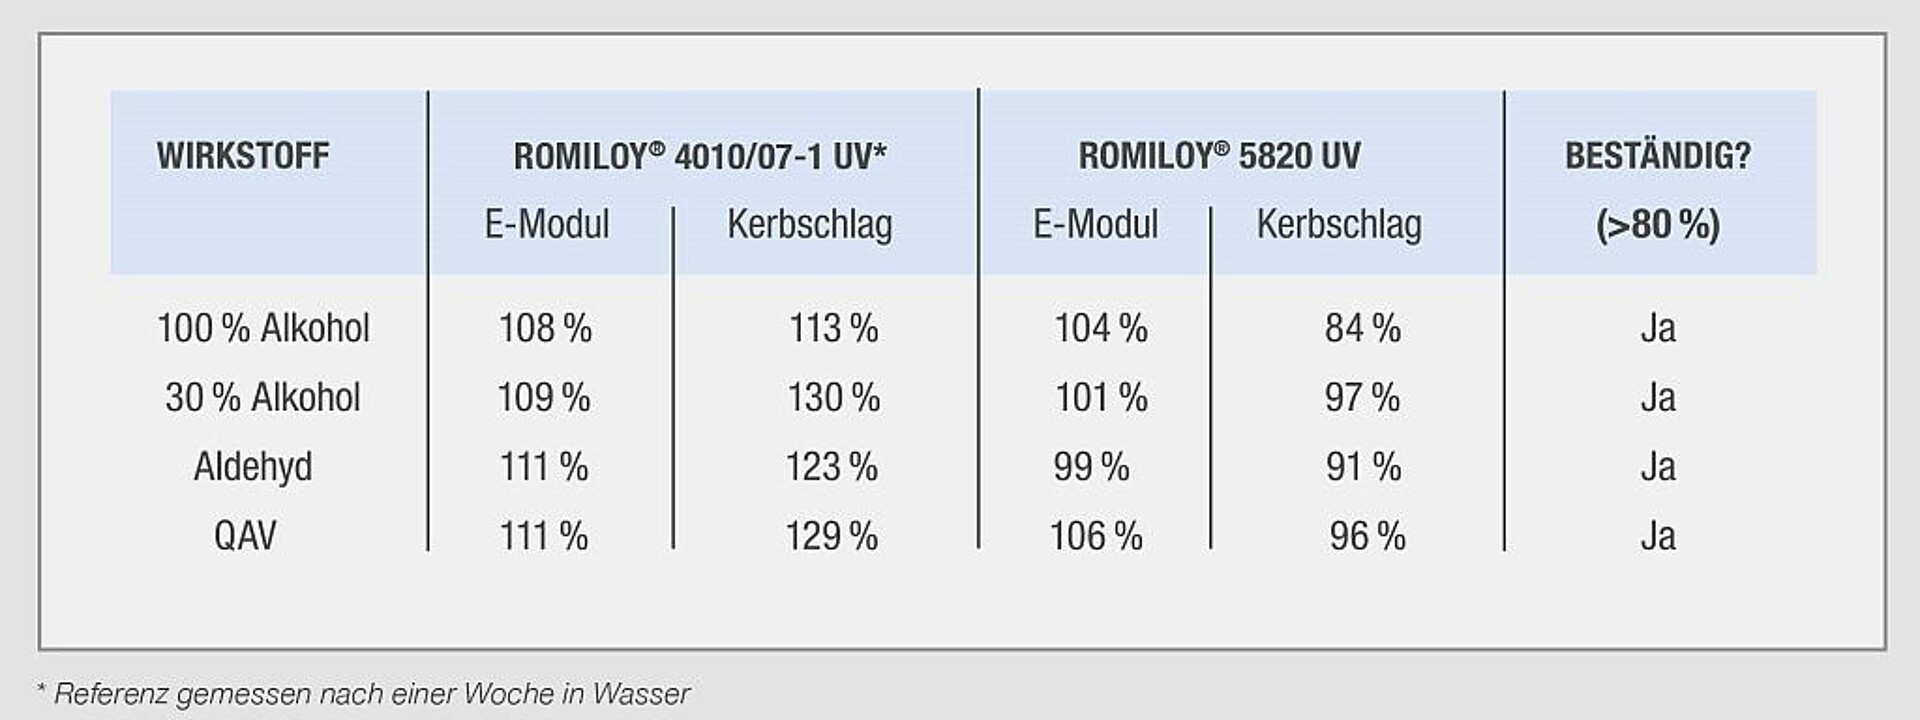 Die Ergebnisse der Prüfung nach DIN EN ISO 175. (Quelle: Romira)